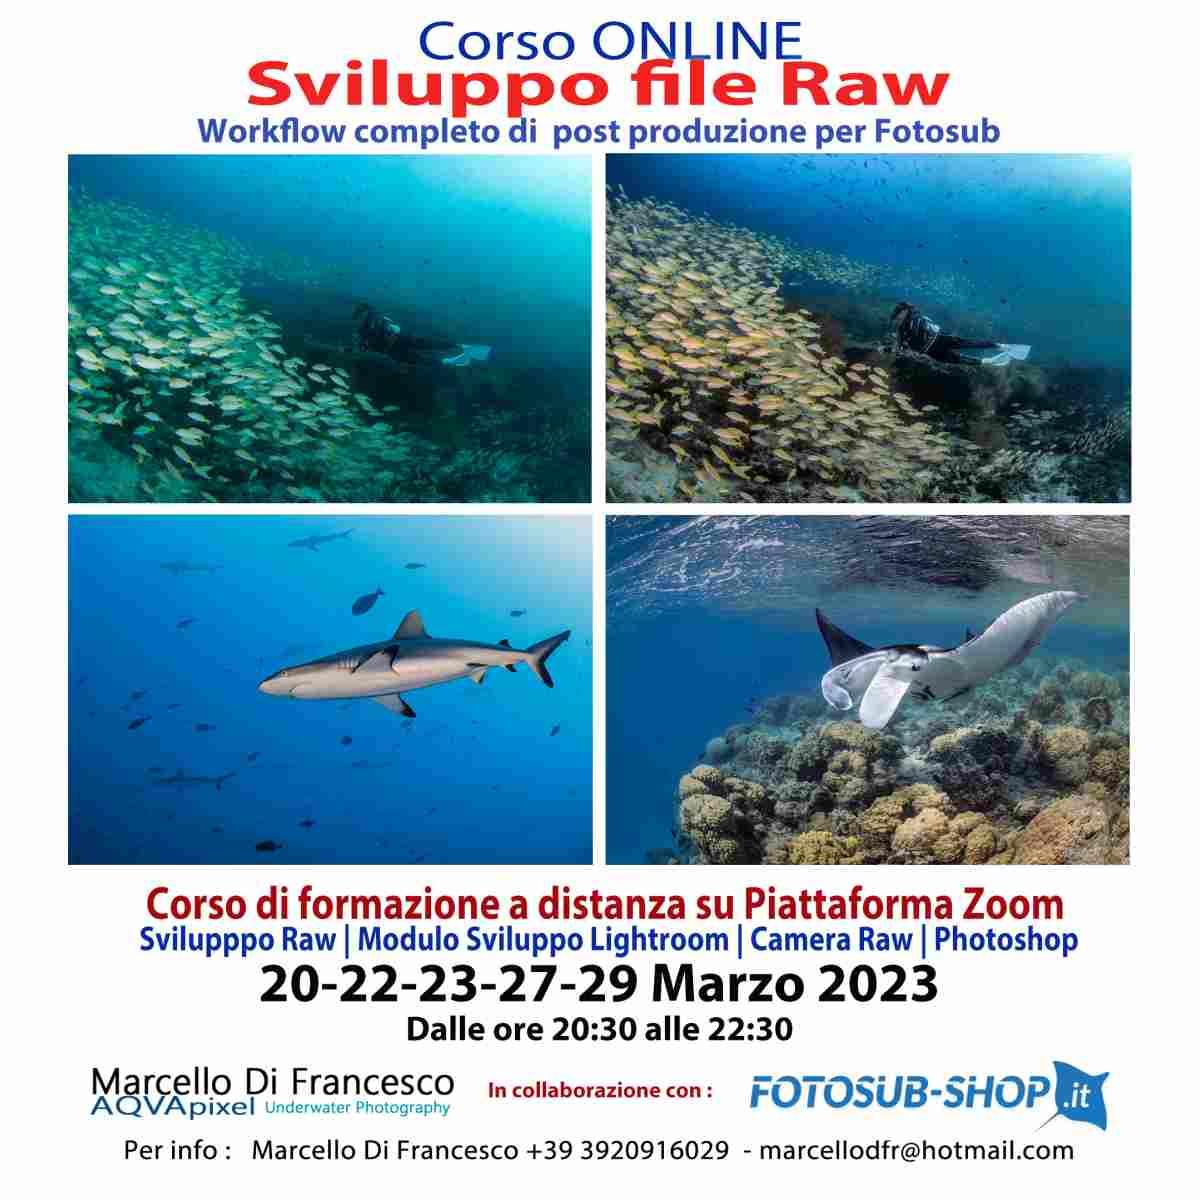 Workshop Introduzione alla Fotografia Grandangolare - di Marcello Di Francesco - 10 - 11 Settembre 2022